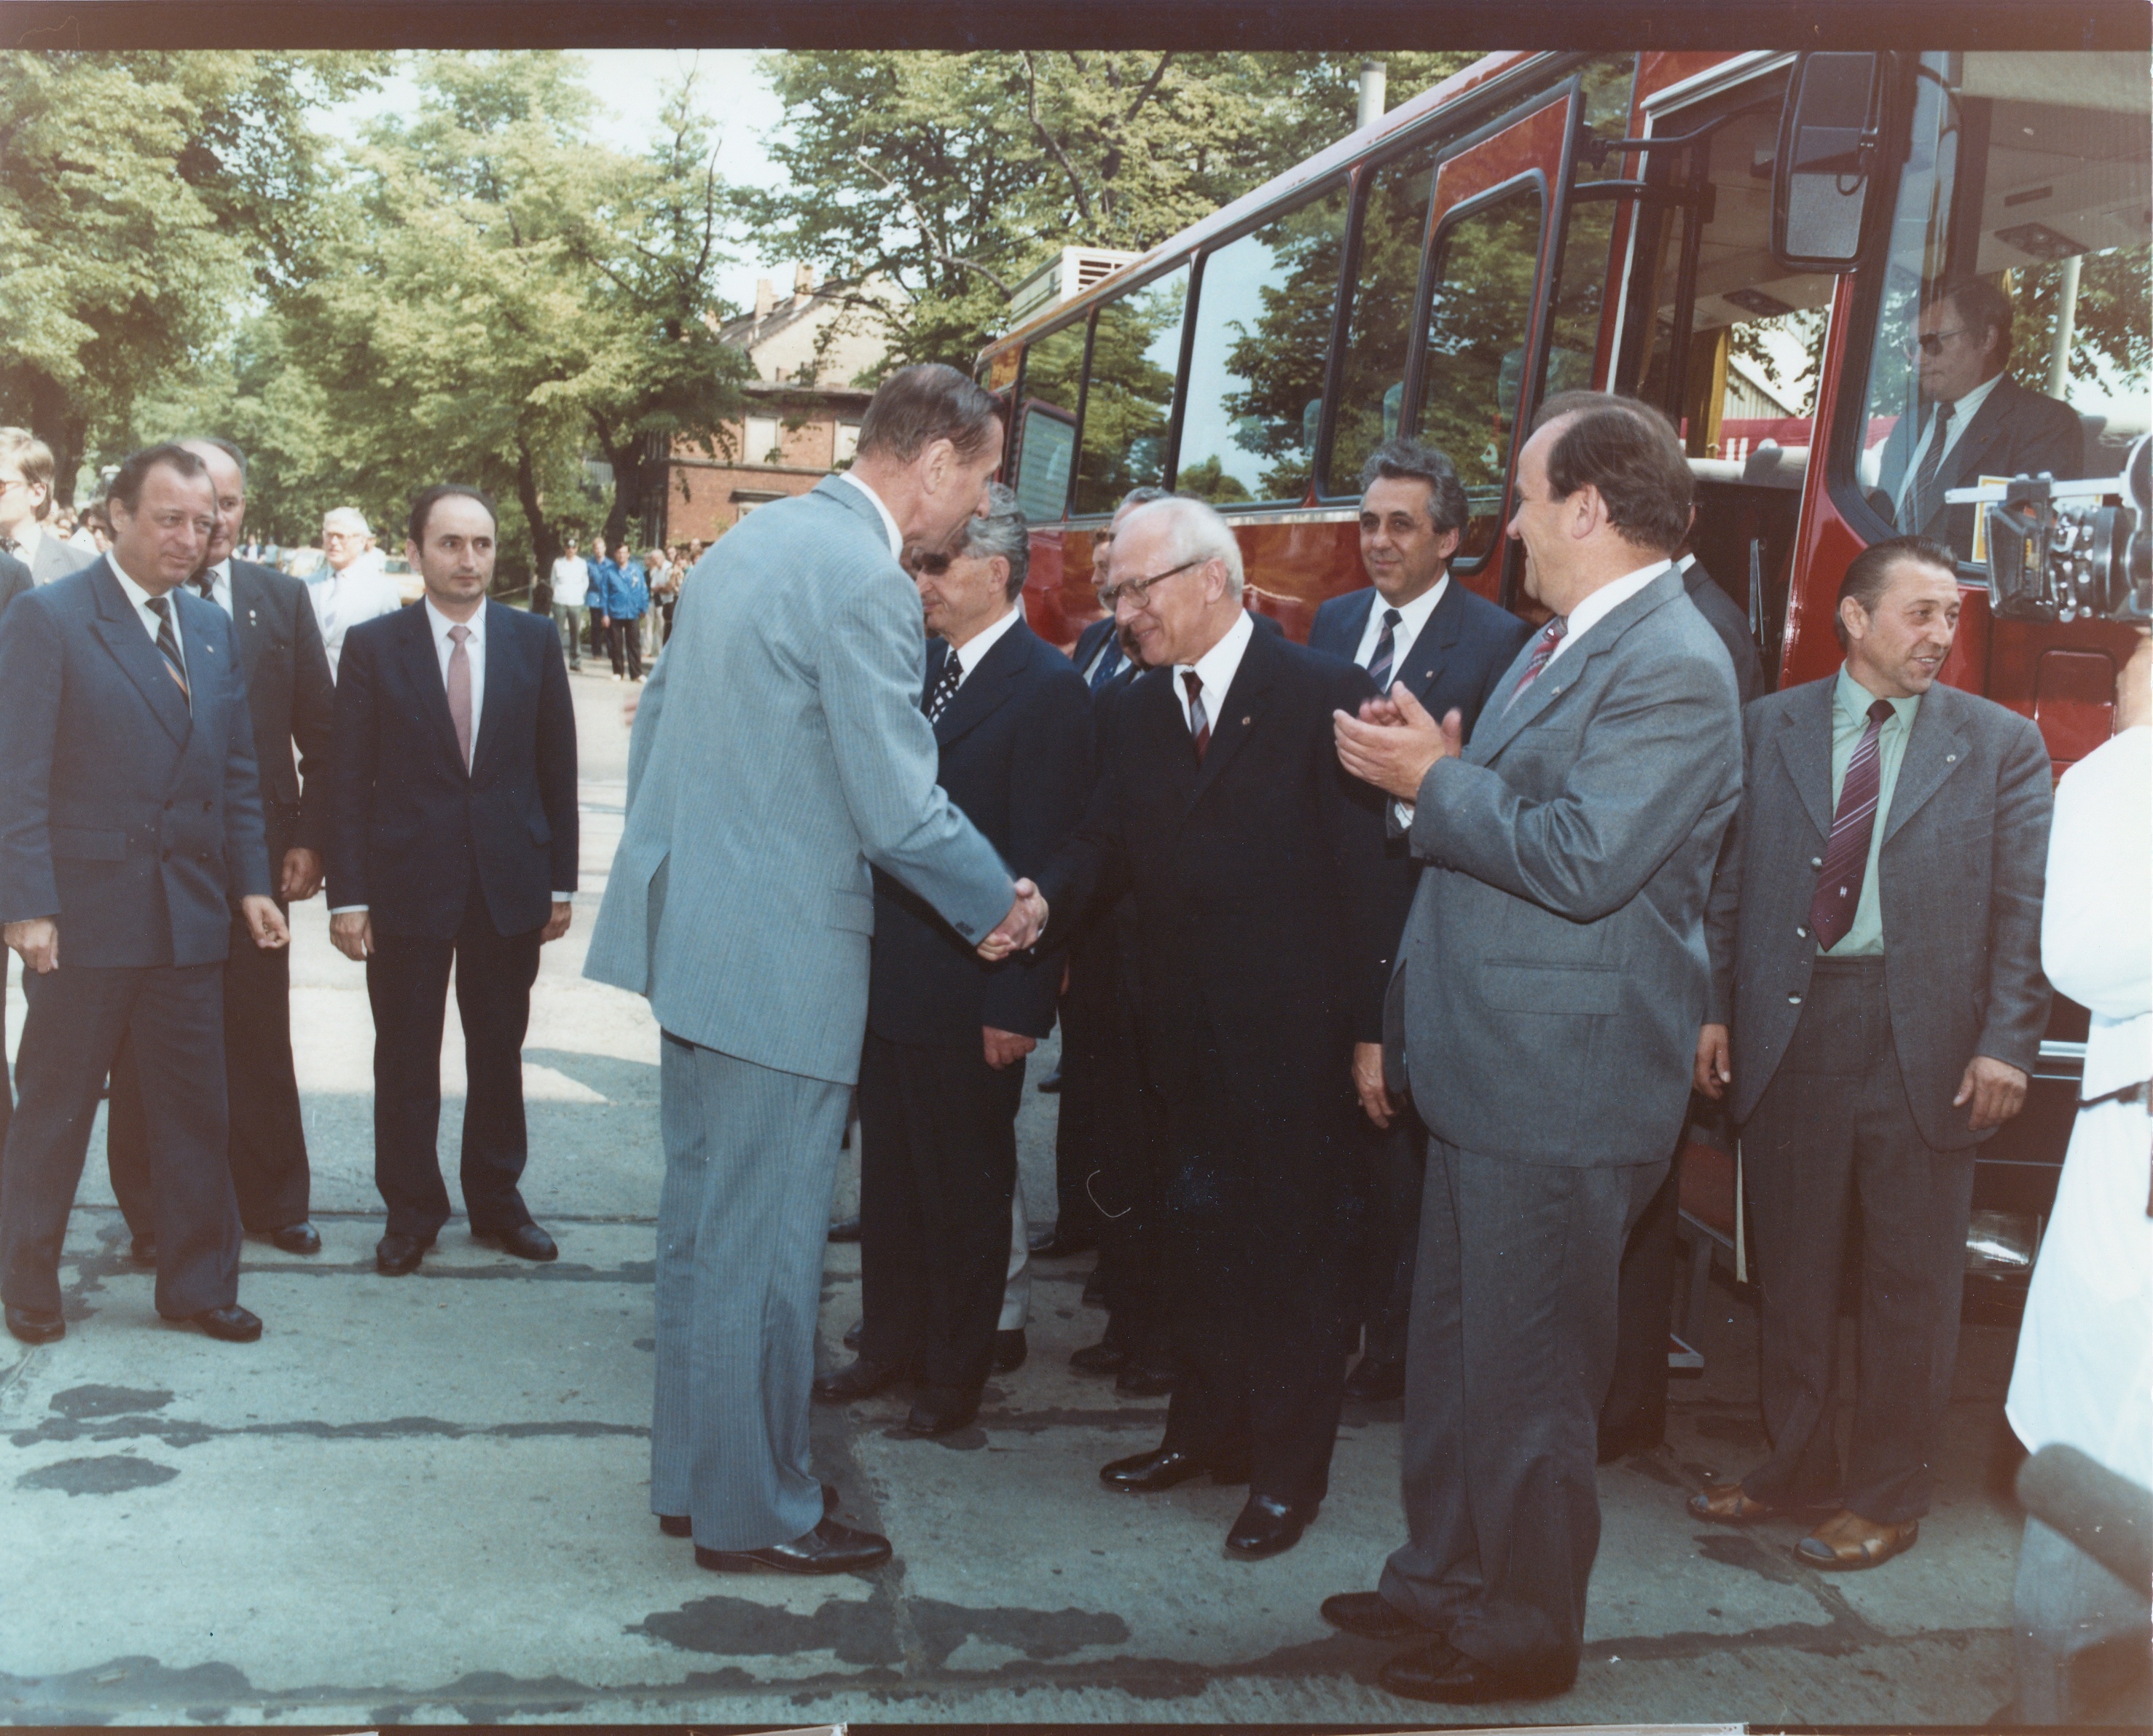 Honecker besucht das WF, Honecker in der Steffelbauer Straße am Reisebus, Honecker schüttelt Mann die Hand, Egon Krenz mit anderen Personen im Hintergrund, (Industriesalon Schöneweide CC BY-NC-SA)